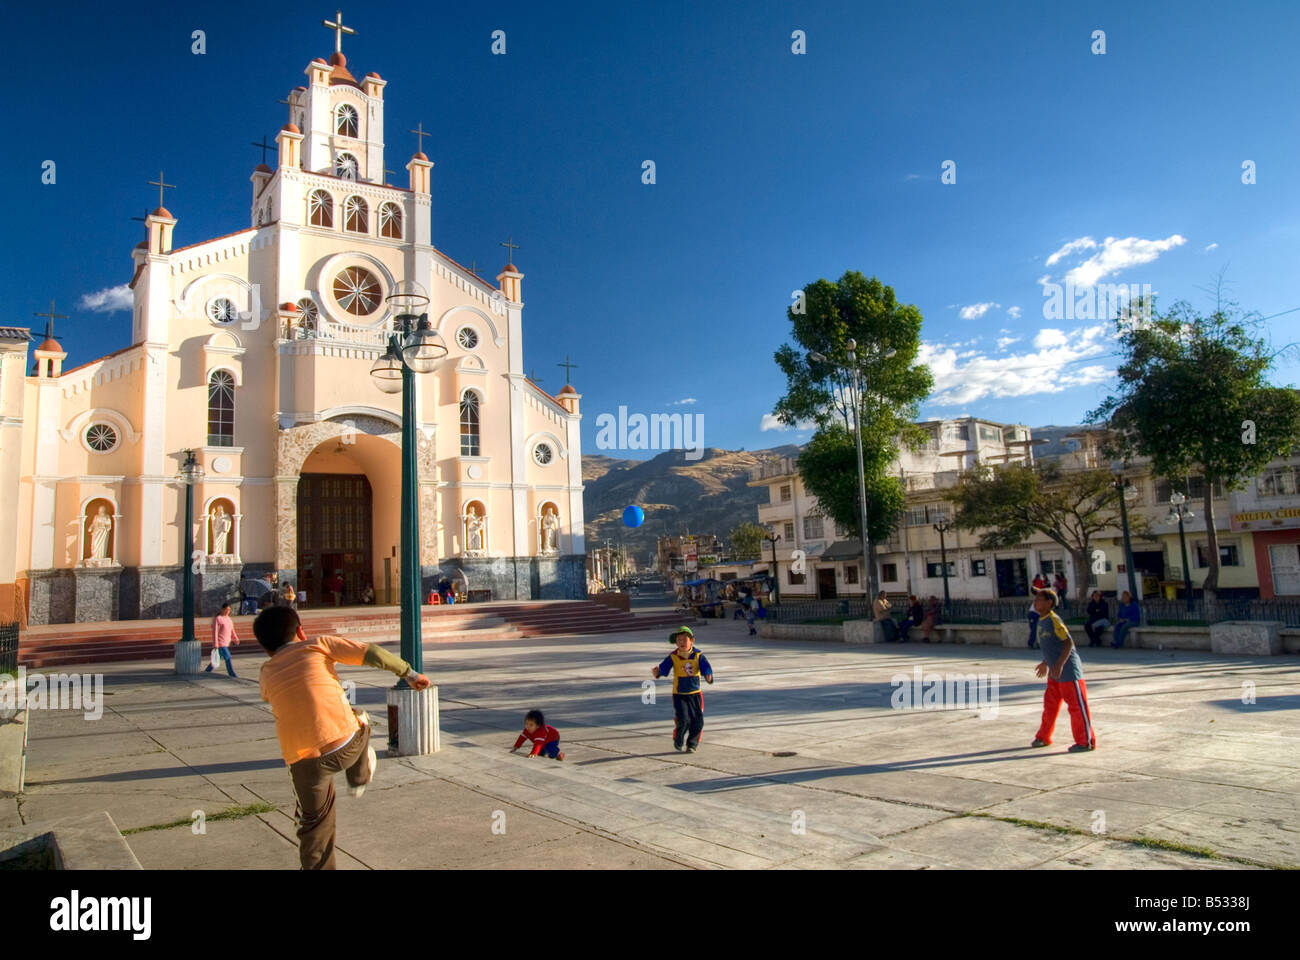 Bambini a giocare a calcio in piazza della chiesa Foto Stock